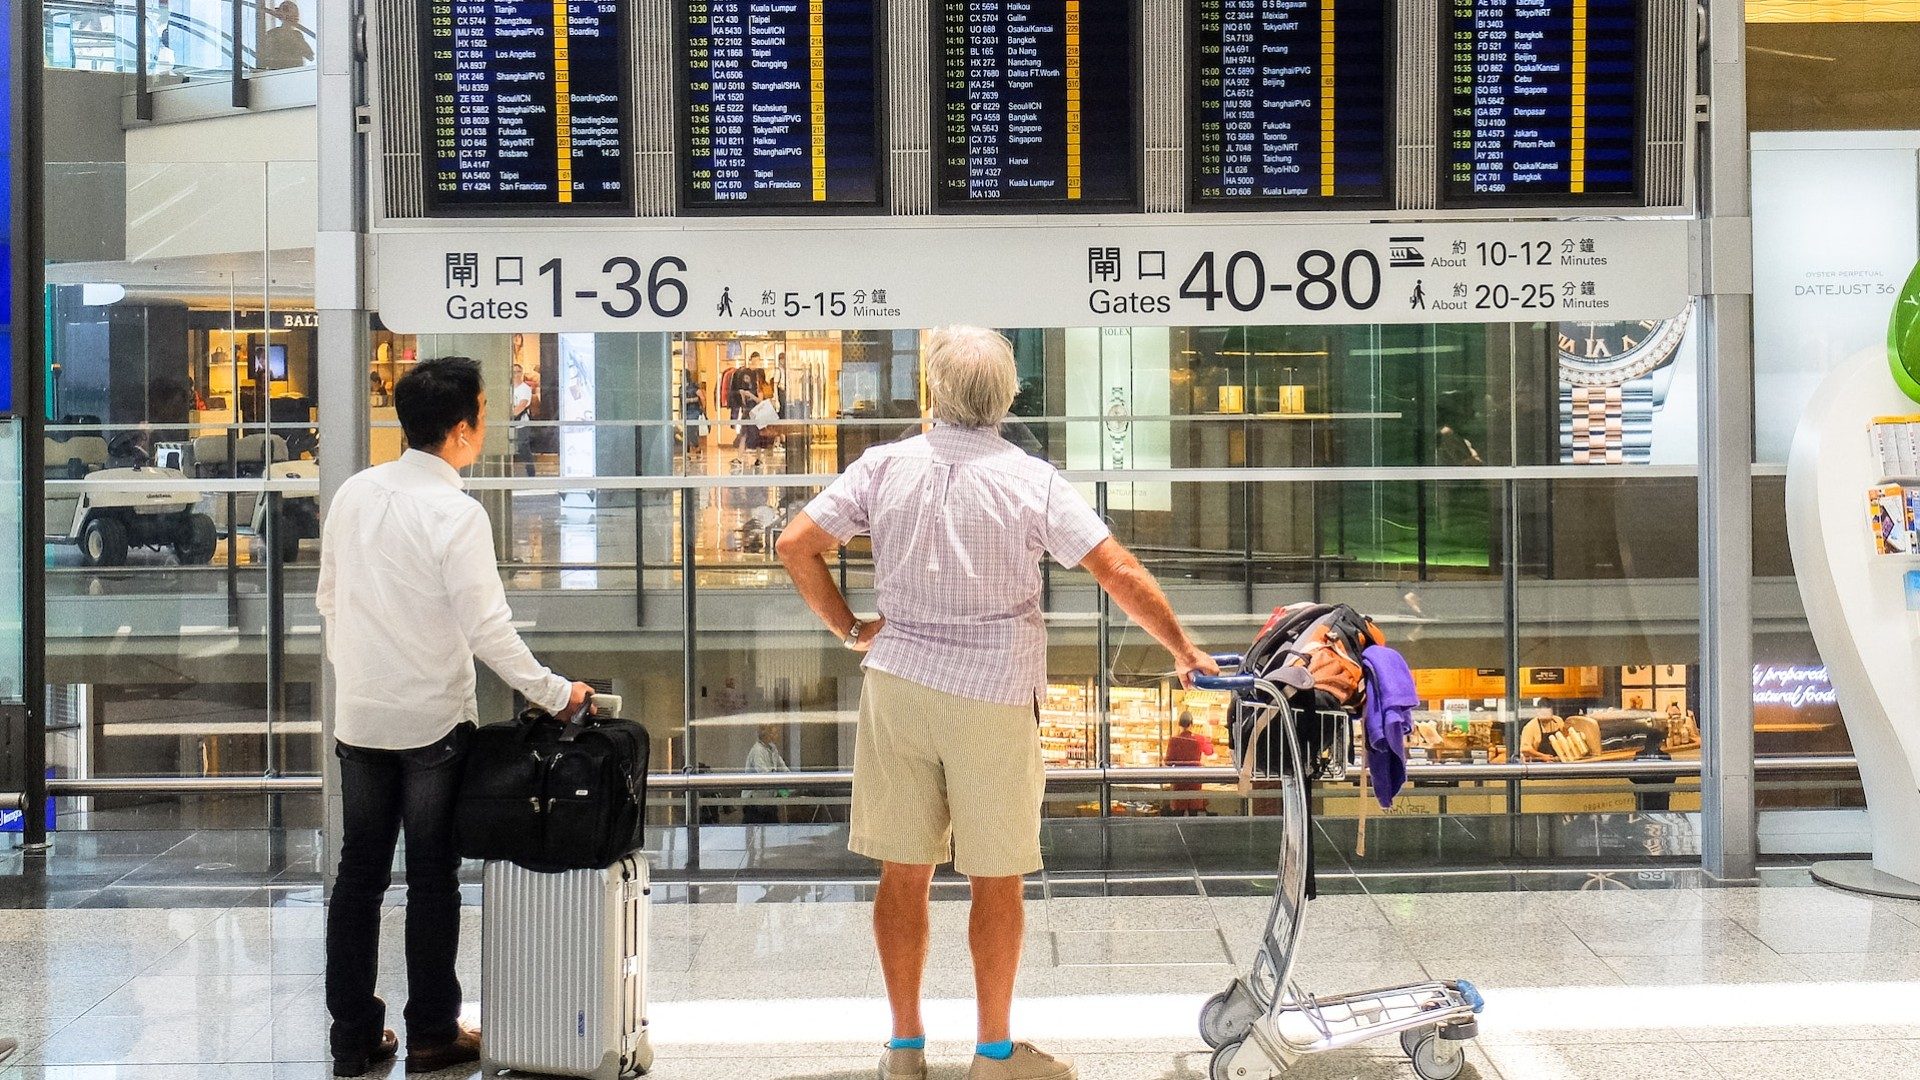 Reisende stehen mit Gepäck am Flughafen und blicken auf die Anzeigetafel